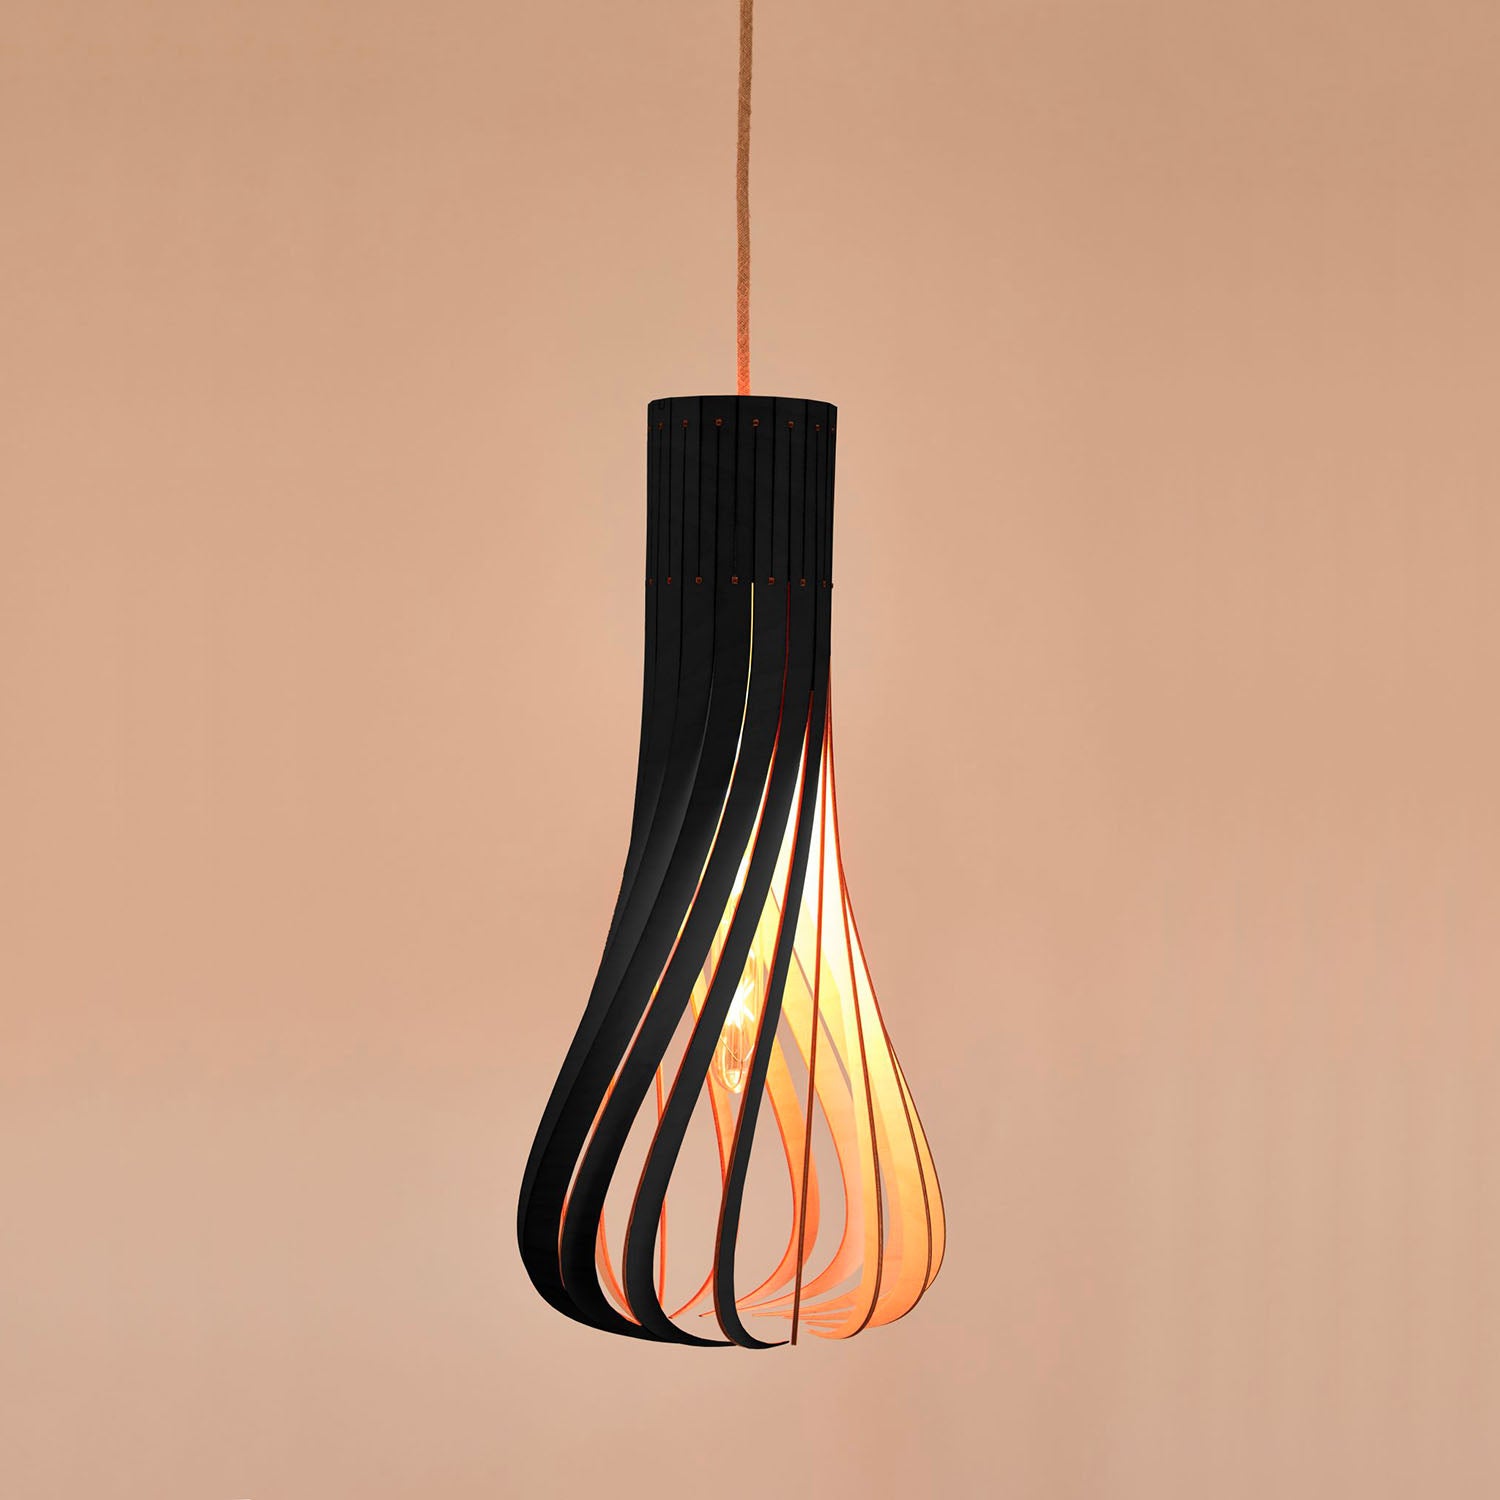 PUNTAKAPANEL - Designer twisted wood pendant light